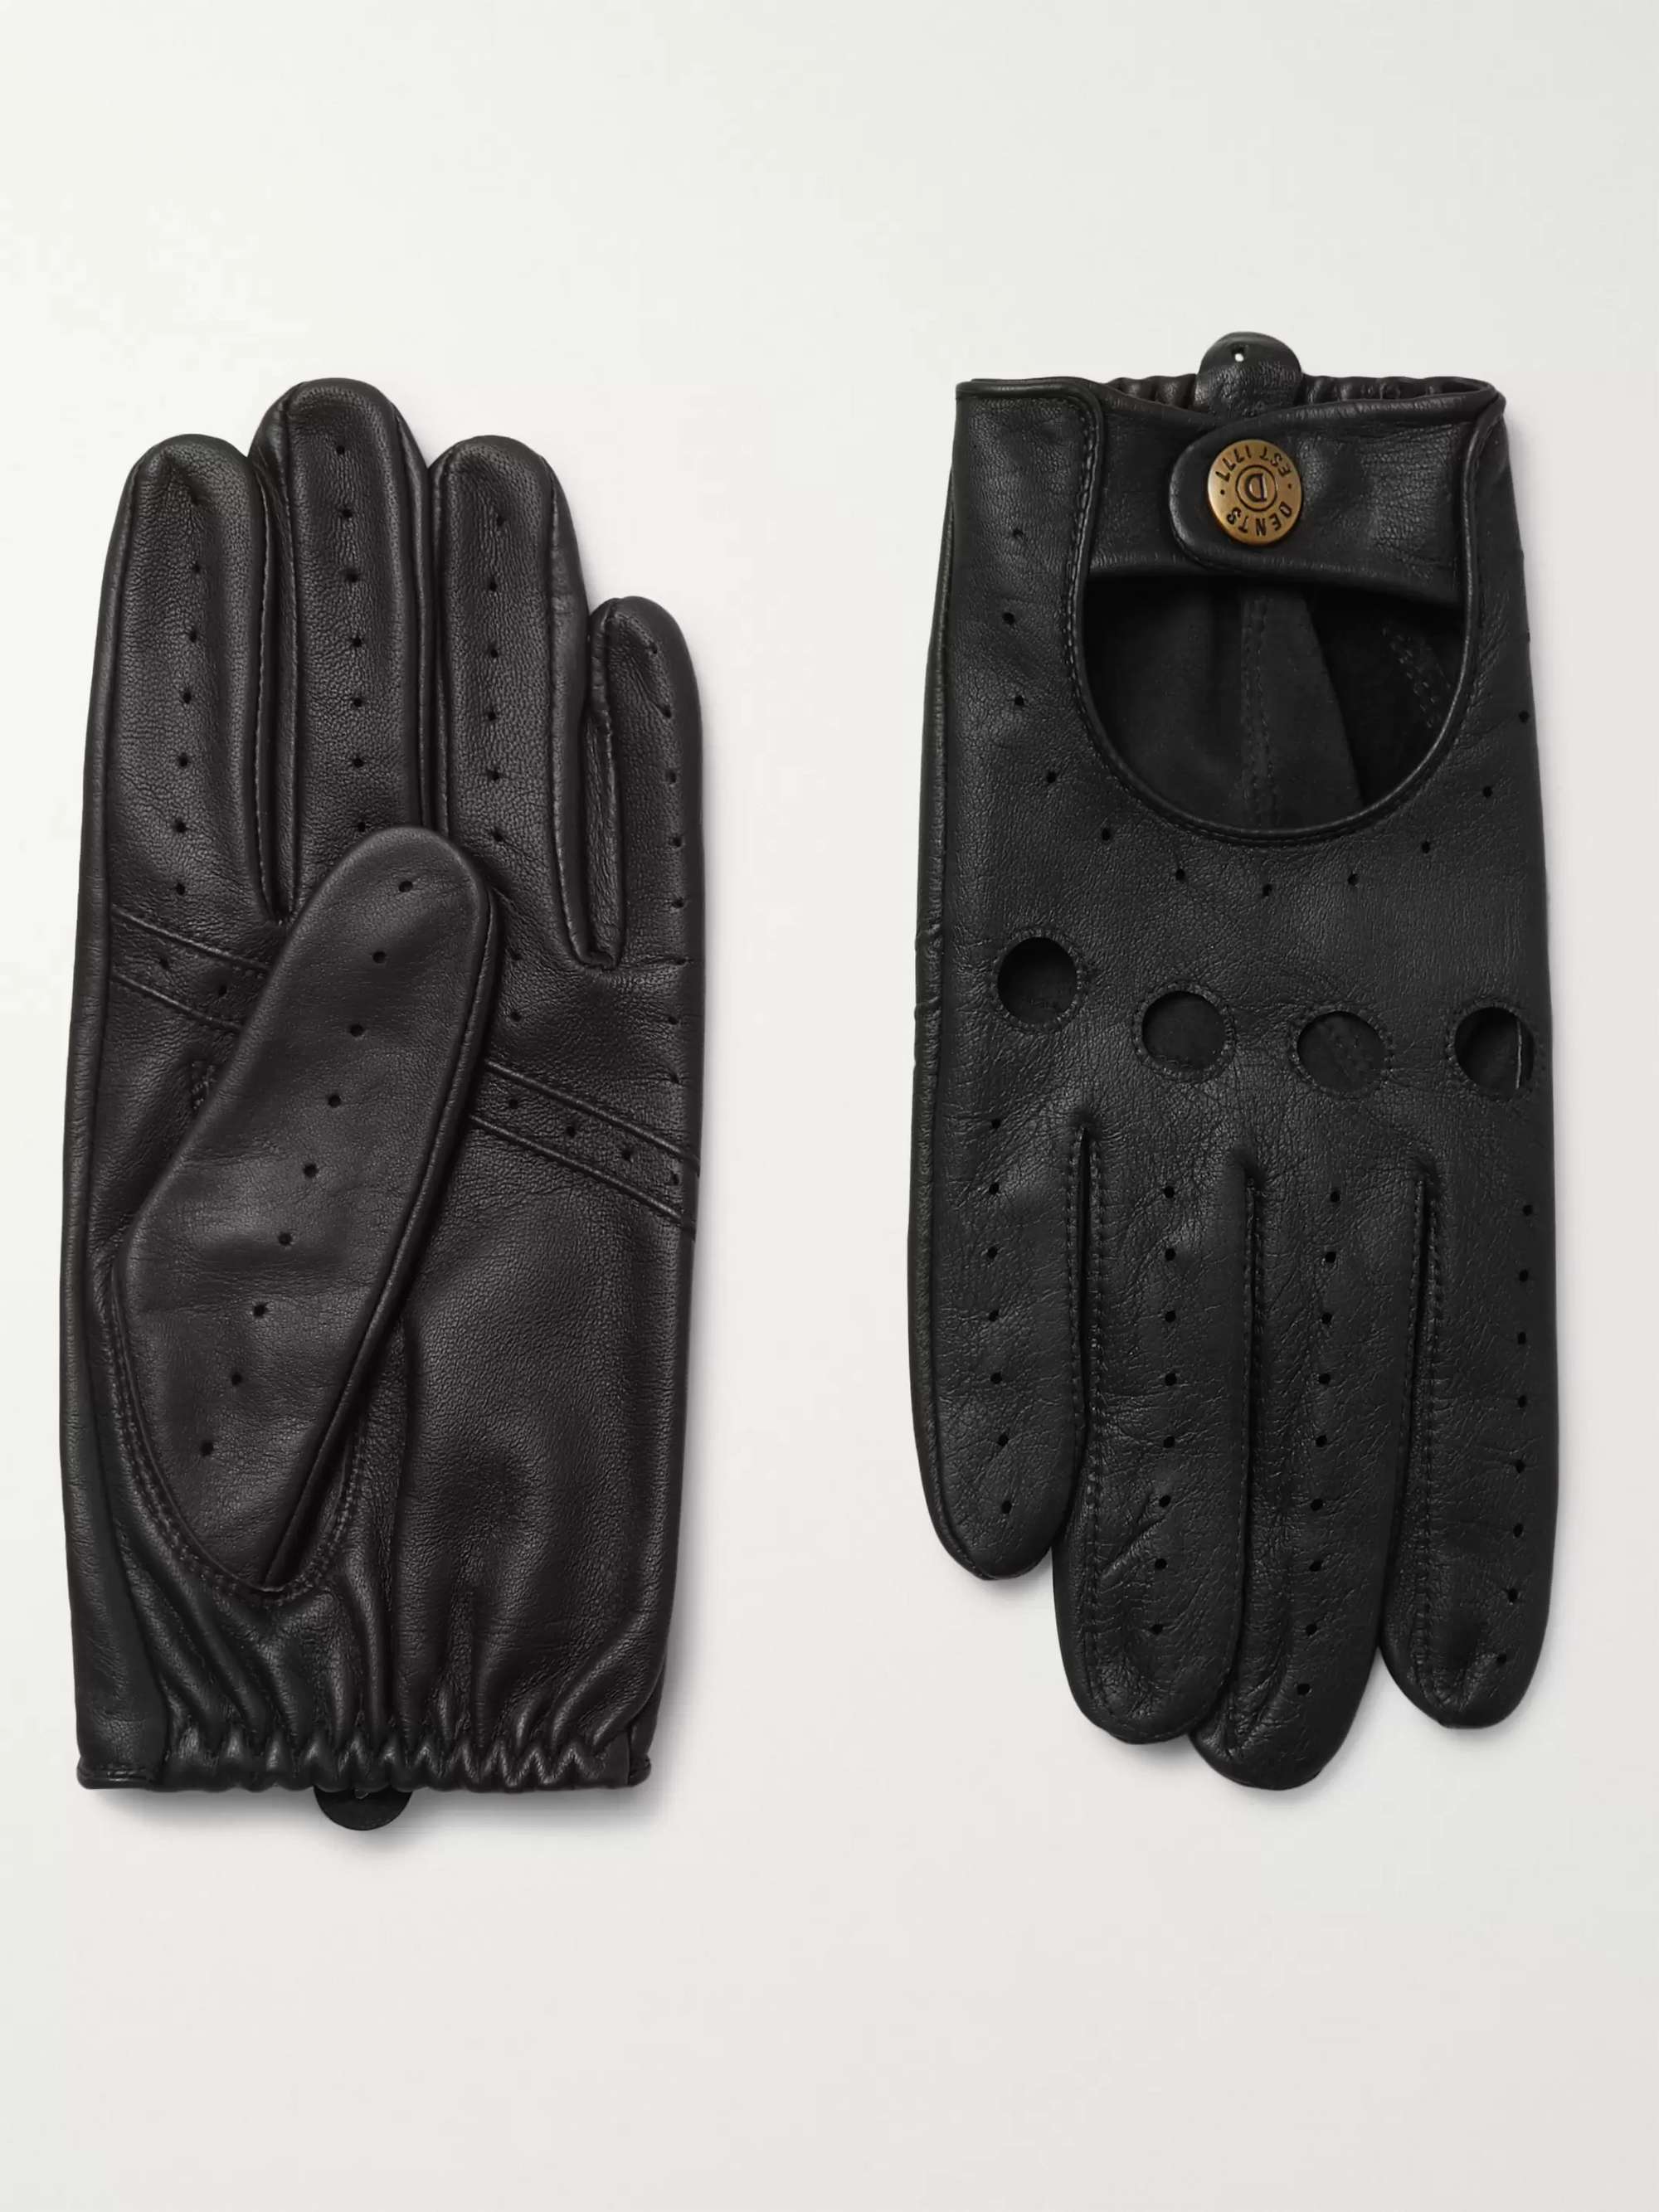 Uretfærdig søsyge Shipley DENTS Silverstone Touchscreen Leather Driving Gloves for Men | MR PORTER